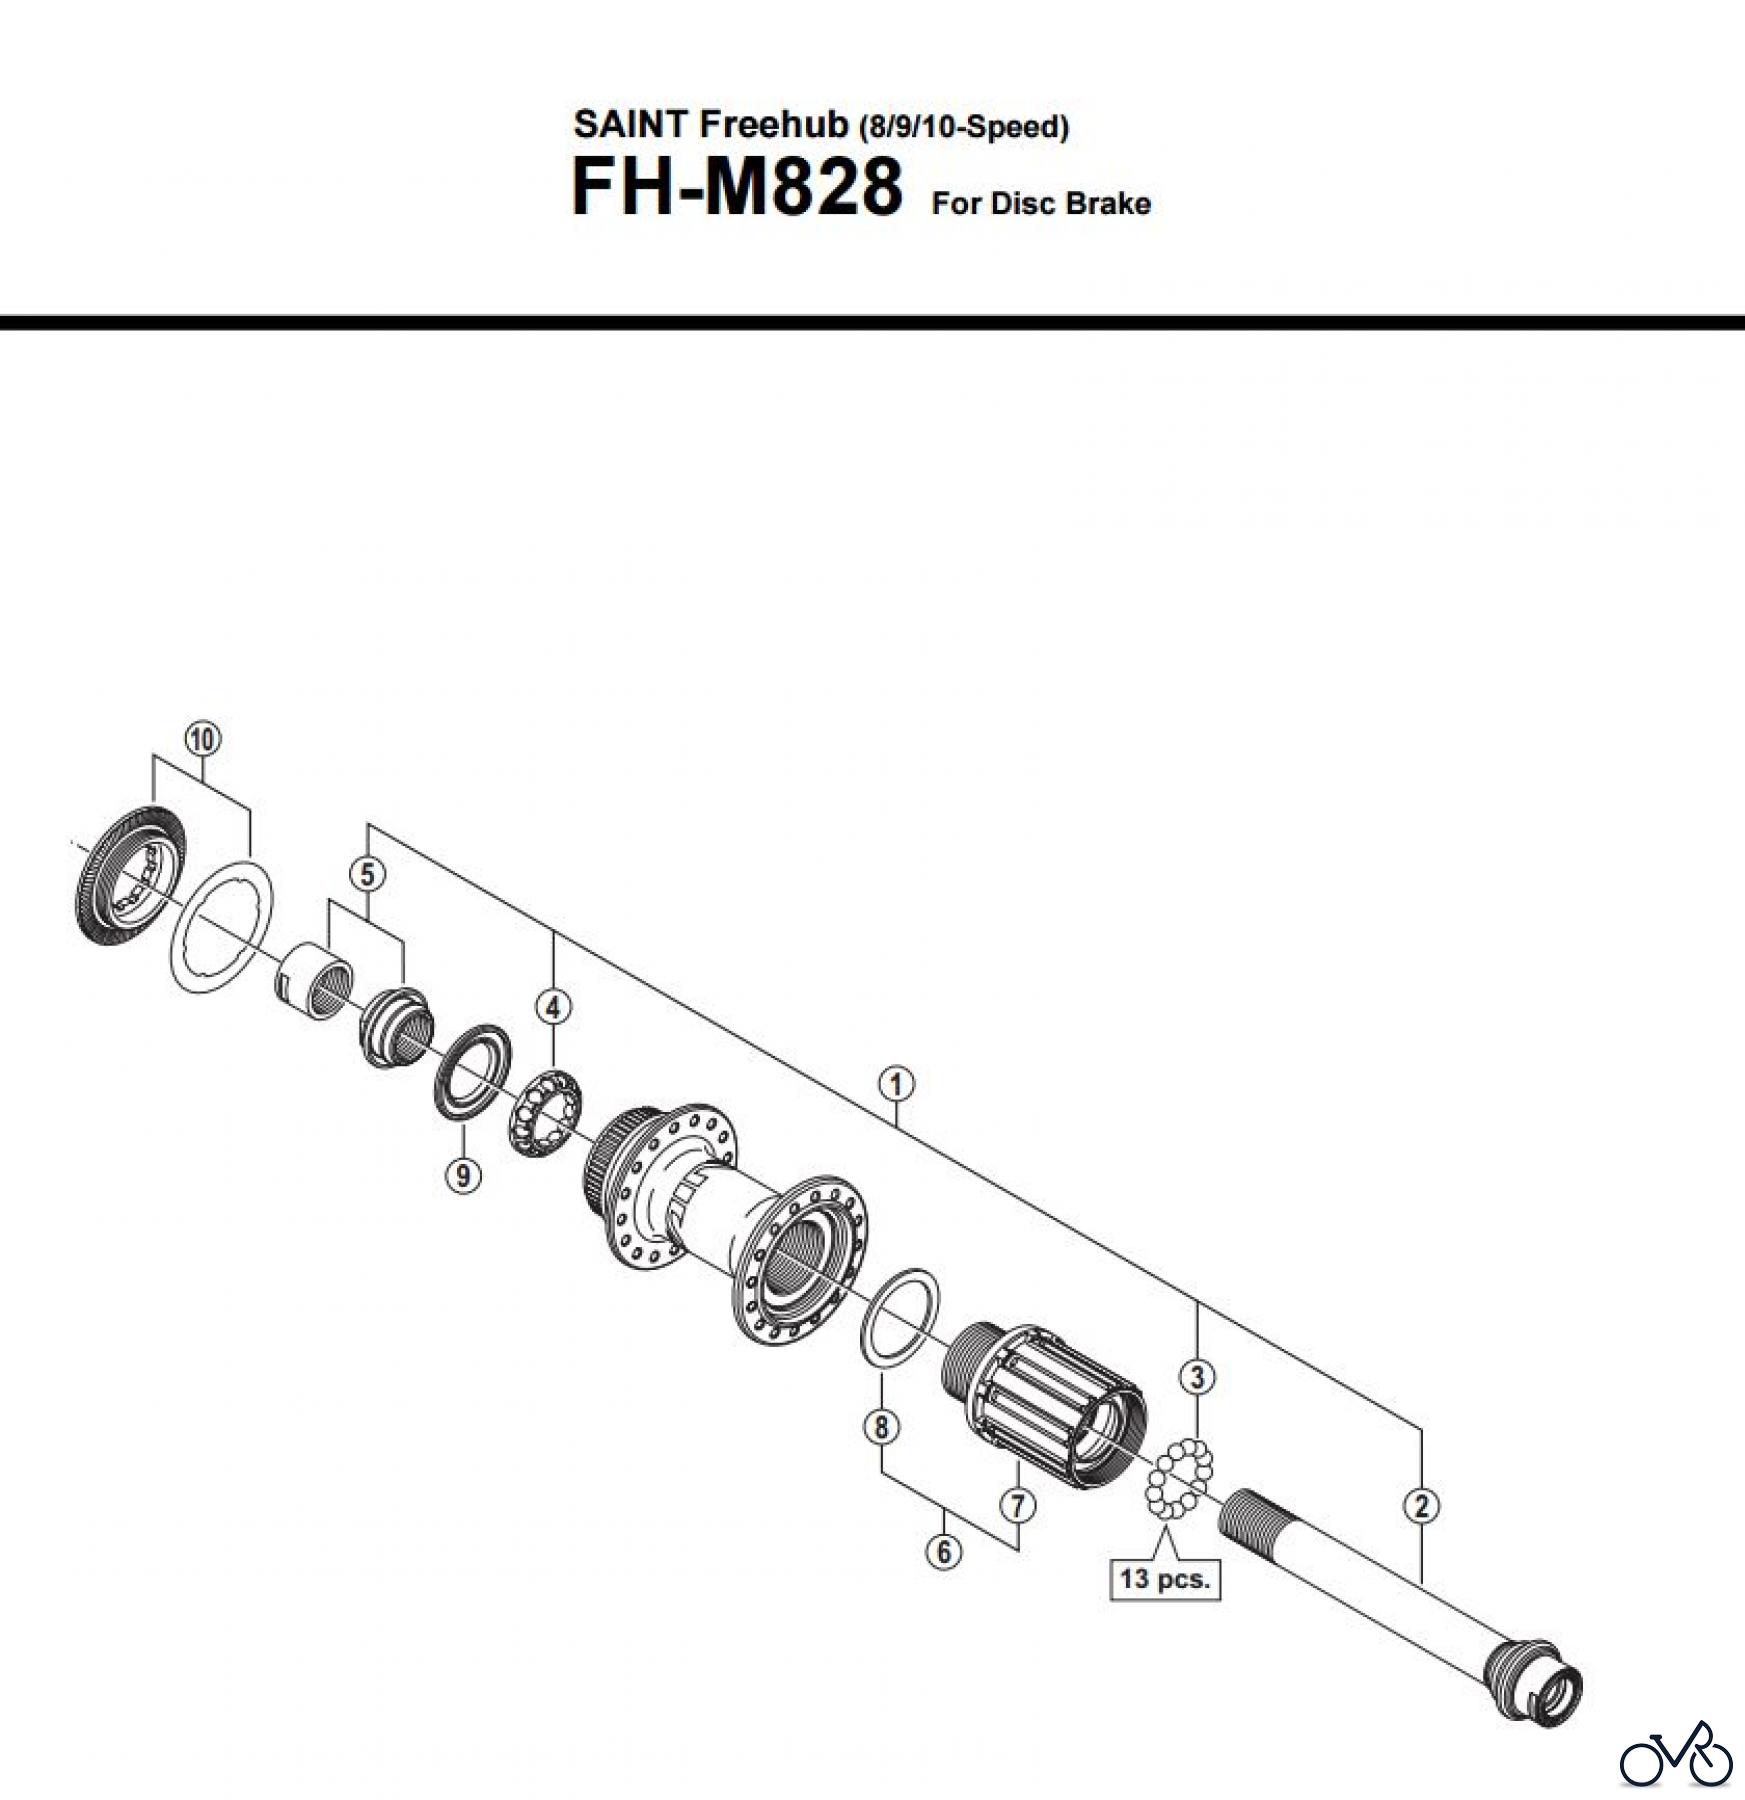  Shimano FH Free Hub - Freilaufnabe FH-M828  SAINT Freehub (8/9/10-Speed)